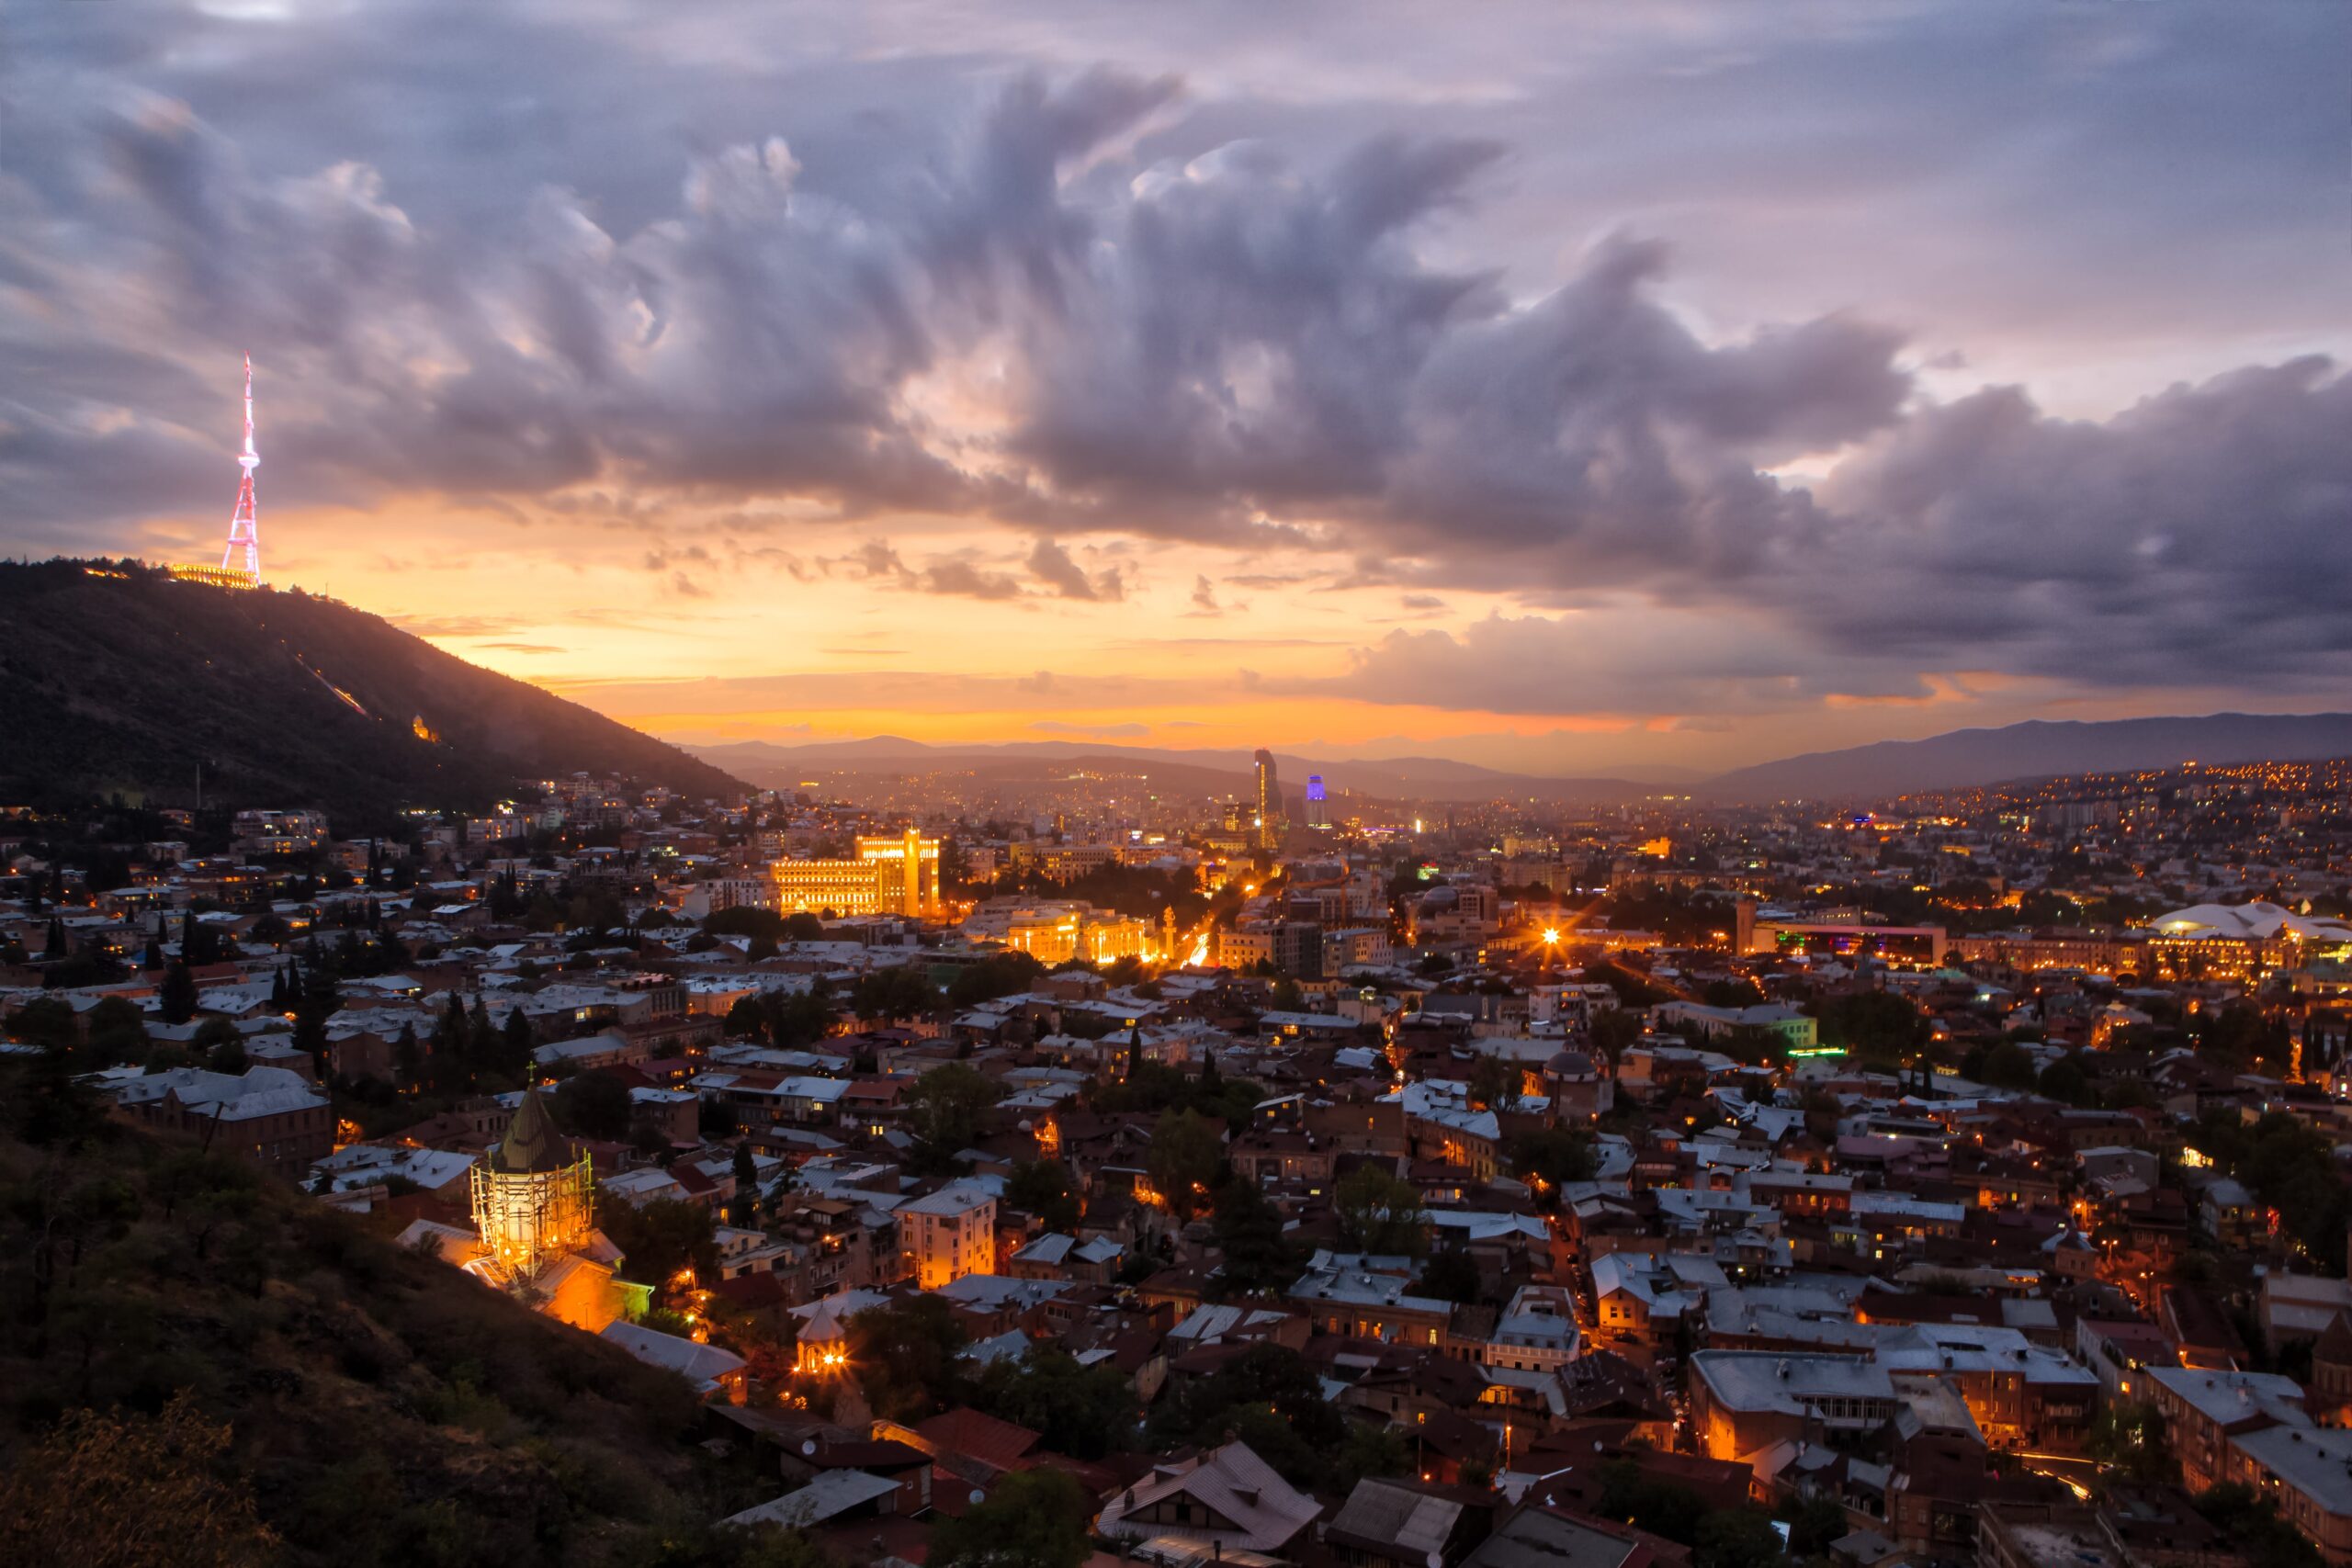 A glorious sunset over Tbilisi, Georgia